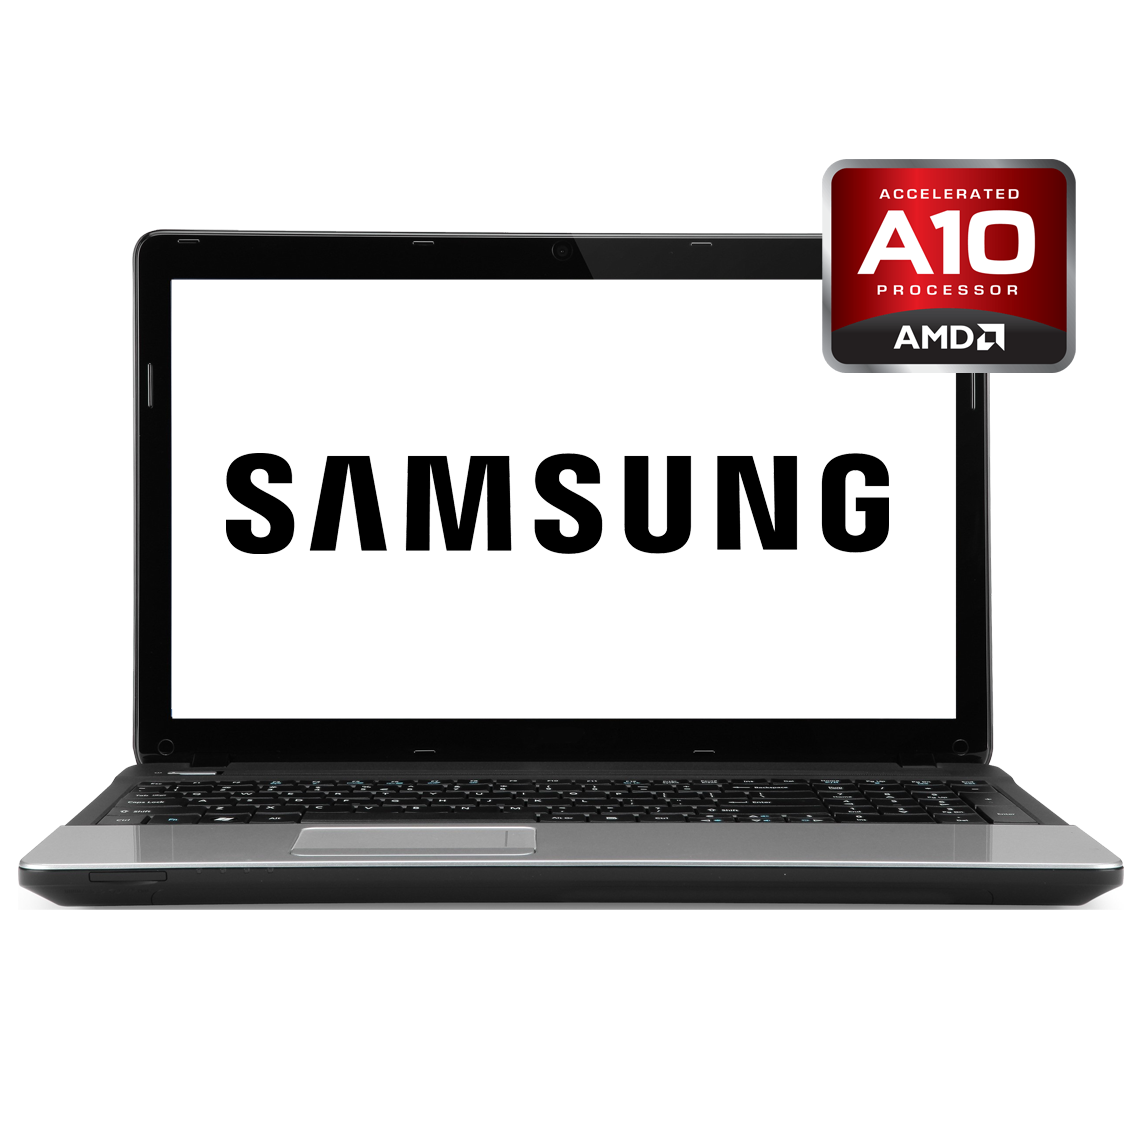 Samsung - 14 inch AMD A10